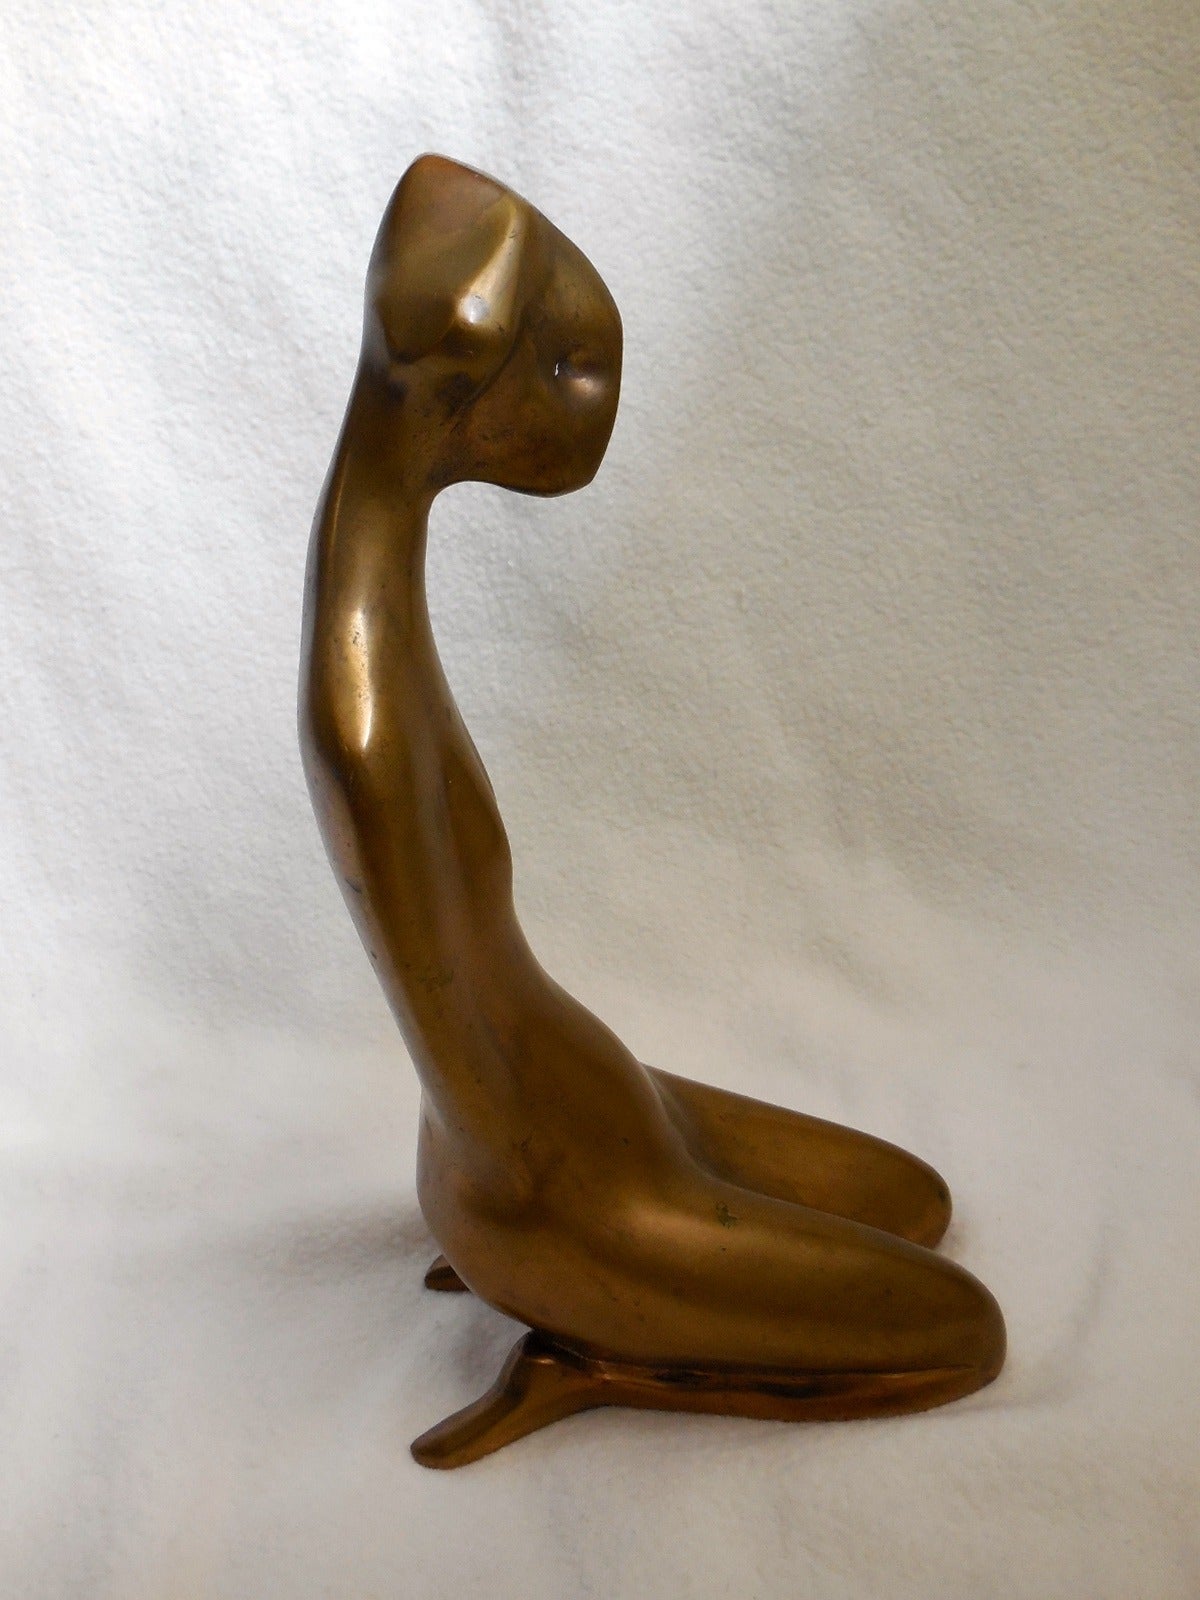 Fille assise à la japonaise, 1964, bronze poli. Elle a été exposée à la Chapman Gallery NYC en 1968. Fondé à la fonderie Morris Singer et numéroté 4/6, signé du monogramme de l'artiste.

Helaine Blumenfeld OBE (née à New York en 1942) est un